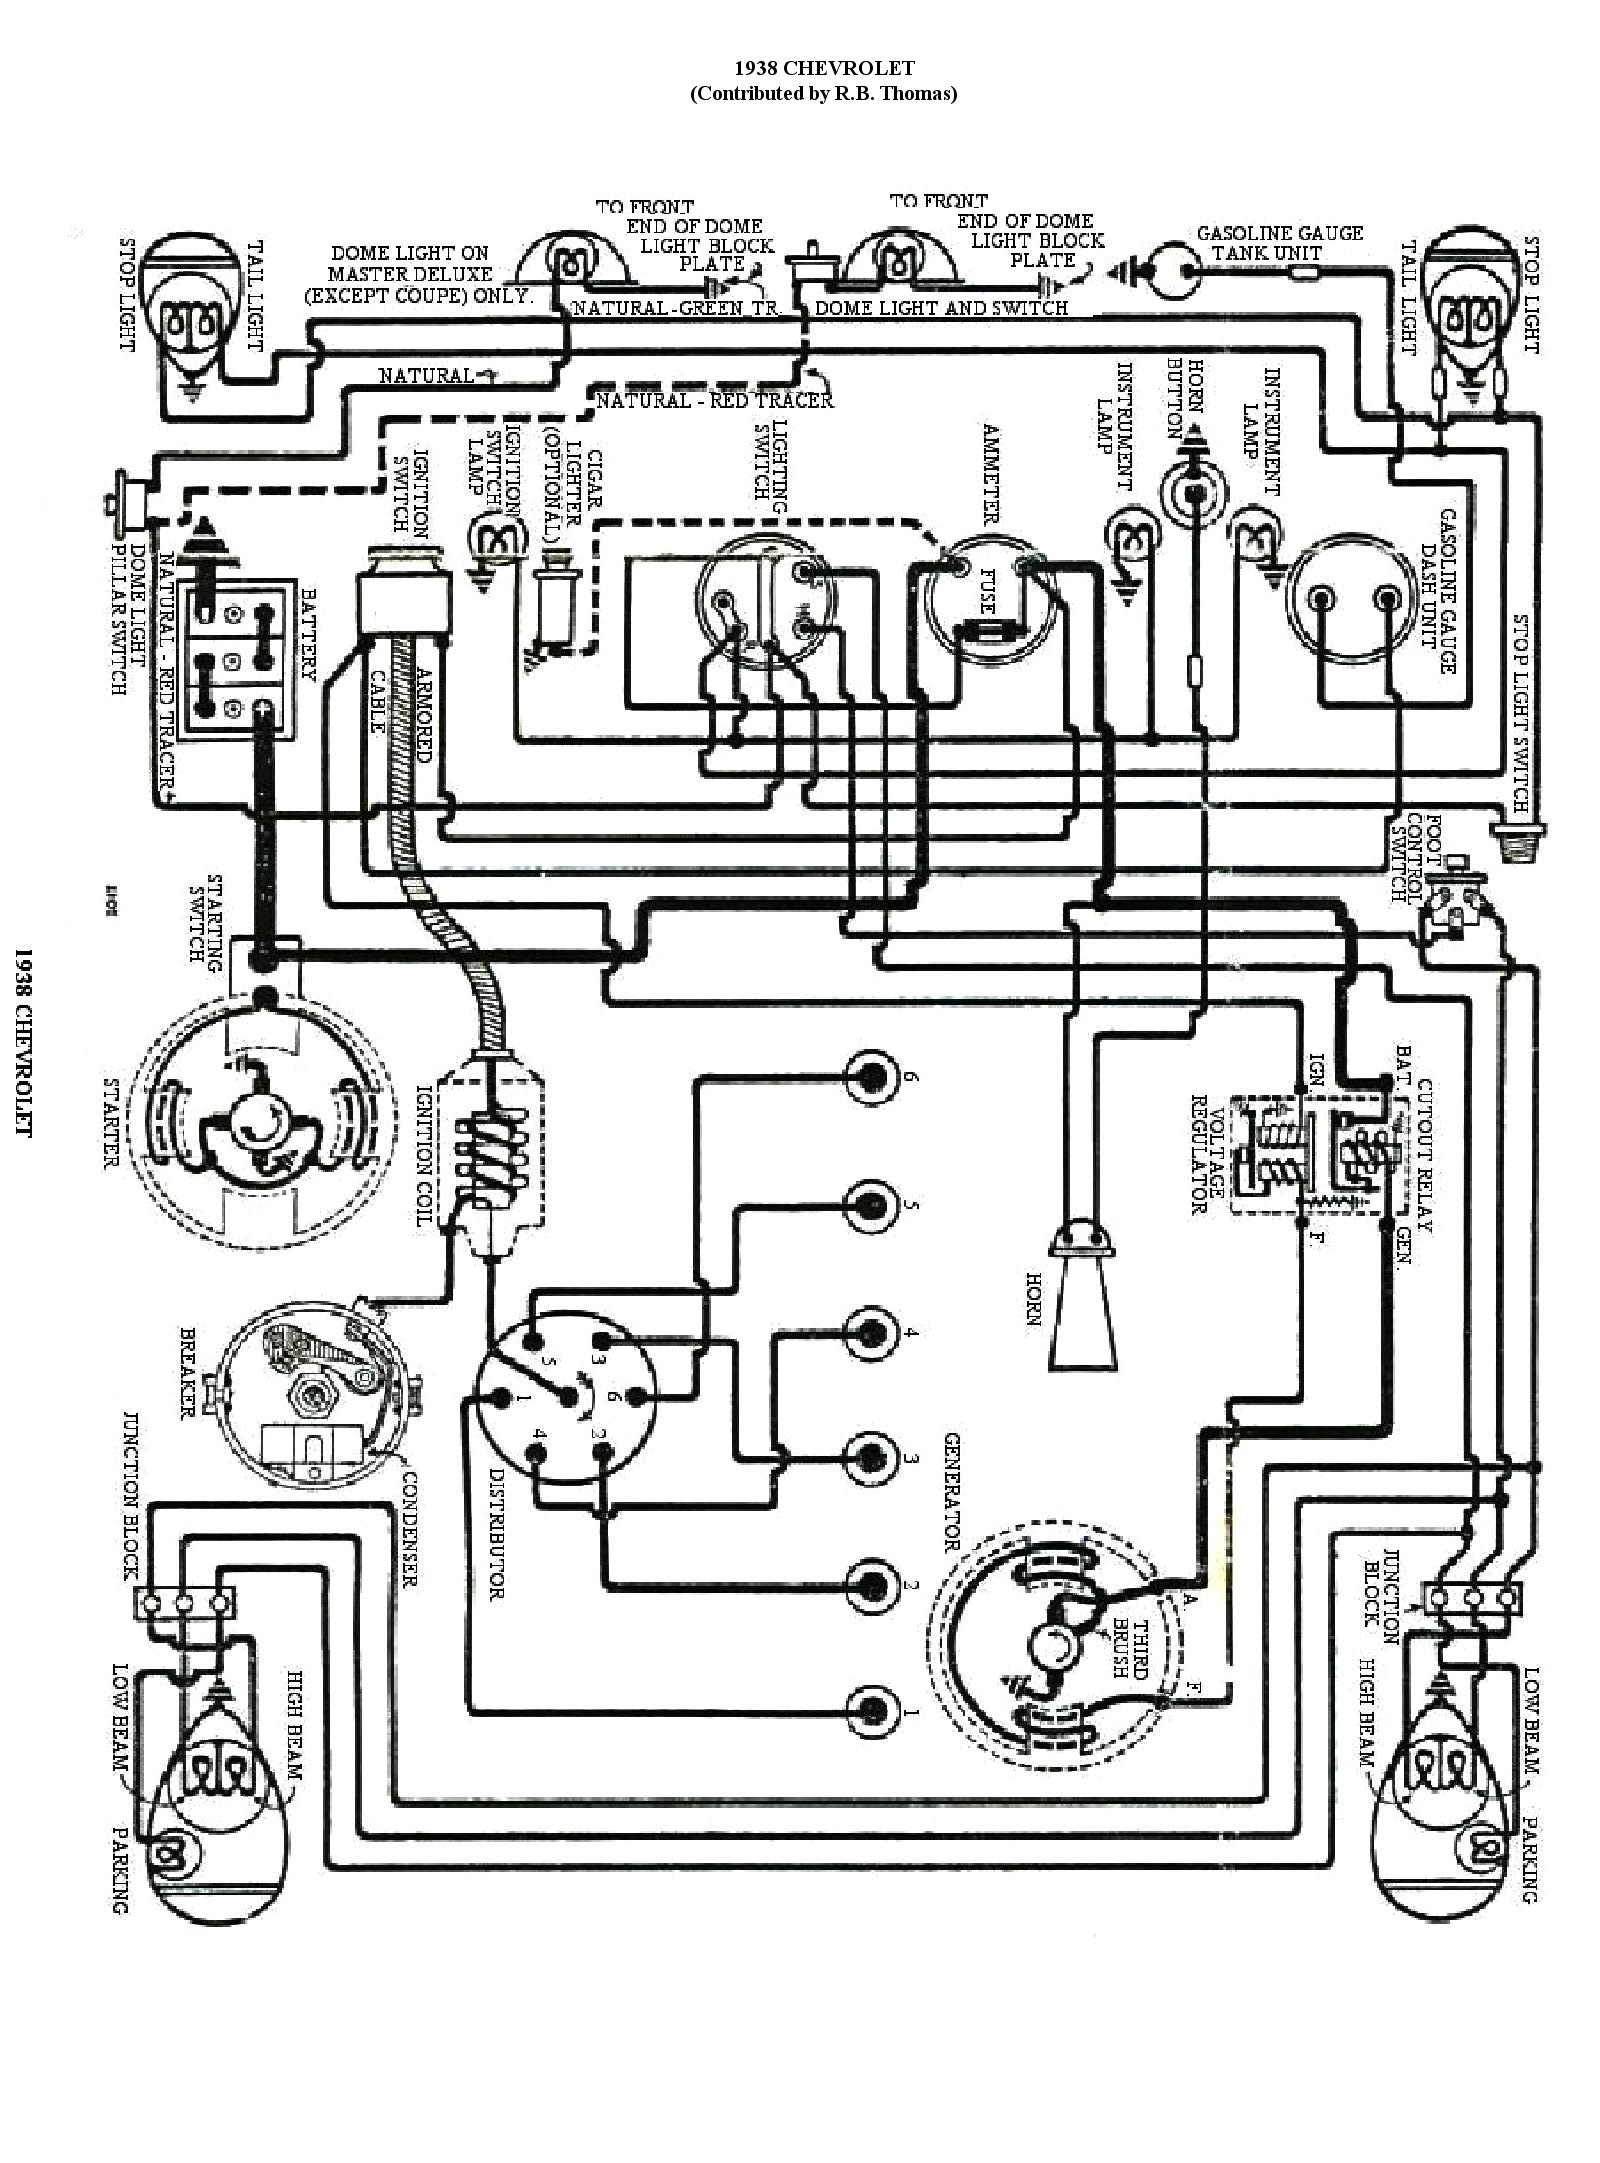 1986 Case 580k Back How All tonater Wioring Case 580 B Wiring Diagram Wiring Diagram Schema Of 1986 Case 580k Back How All tonater Wioring